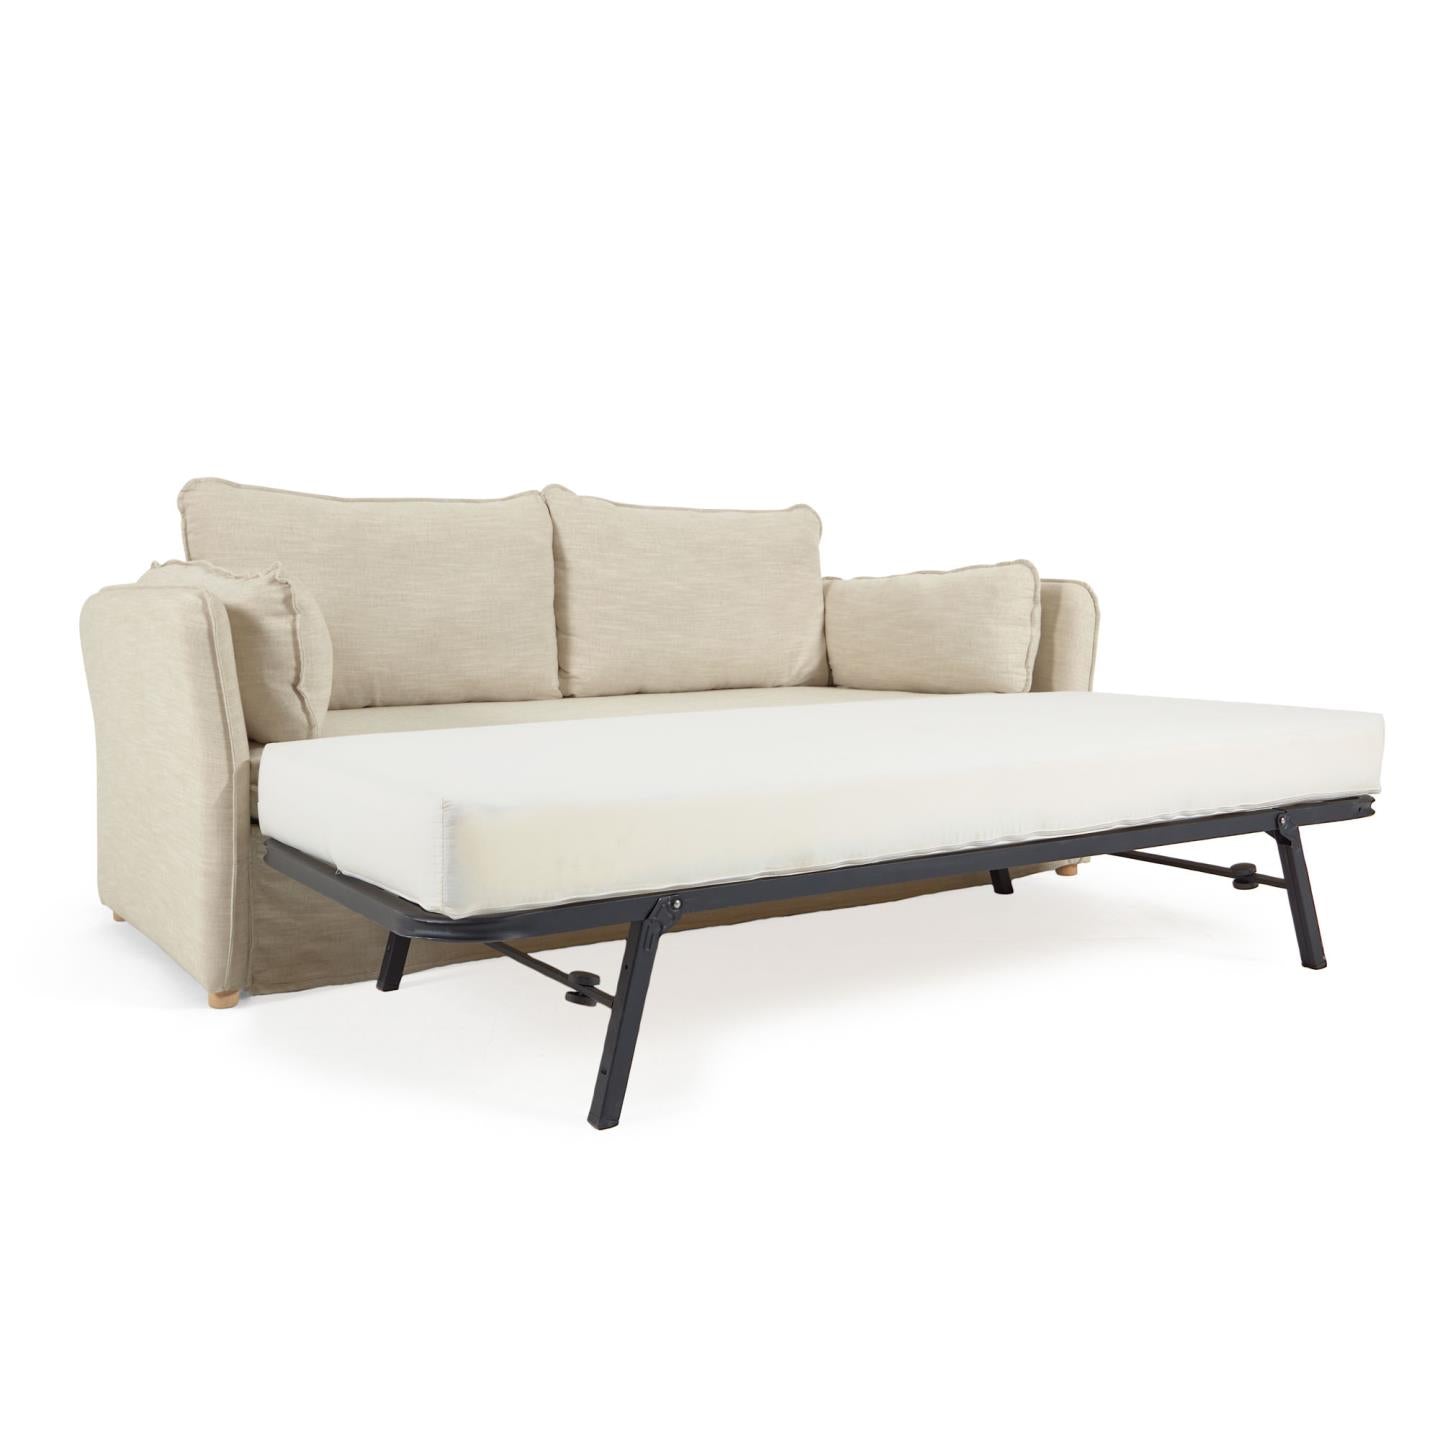 Tanit kanapéágy fehér színben, természetes kivitelben, tömör bükkfa lábakkal, 210 cm